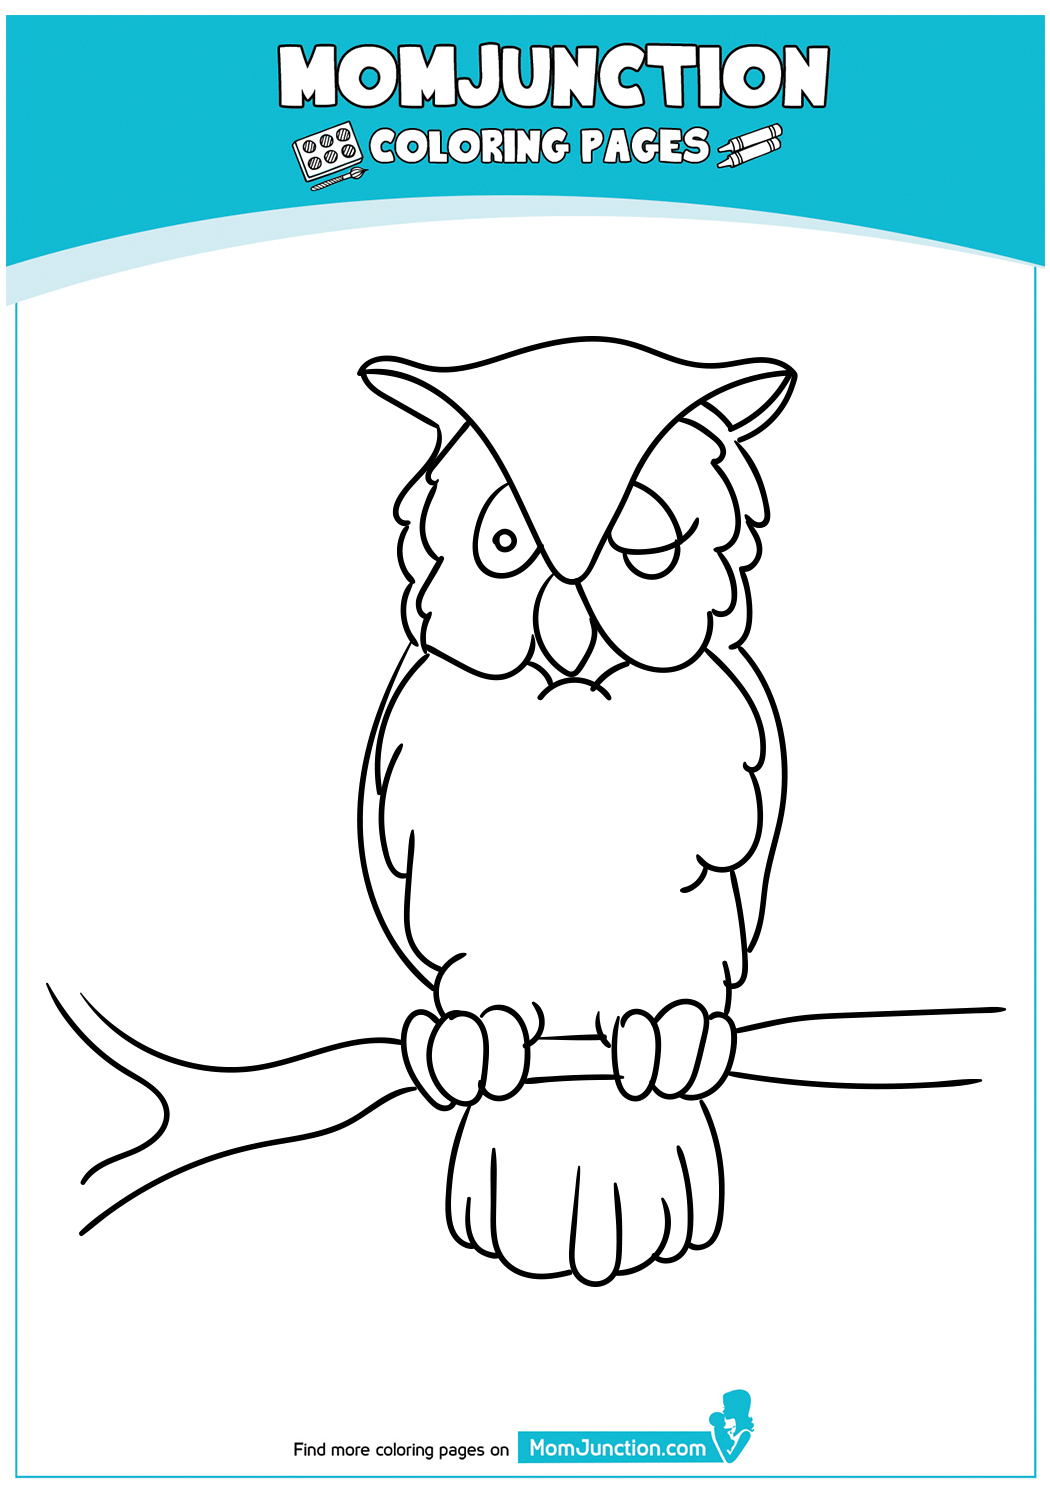 Long-Eared-Owl